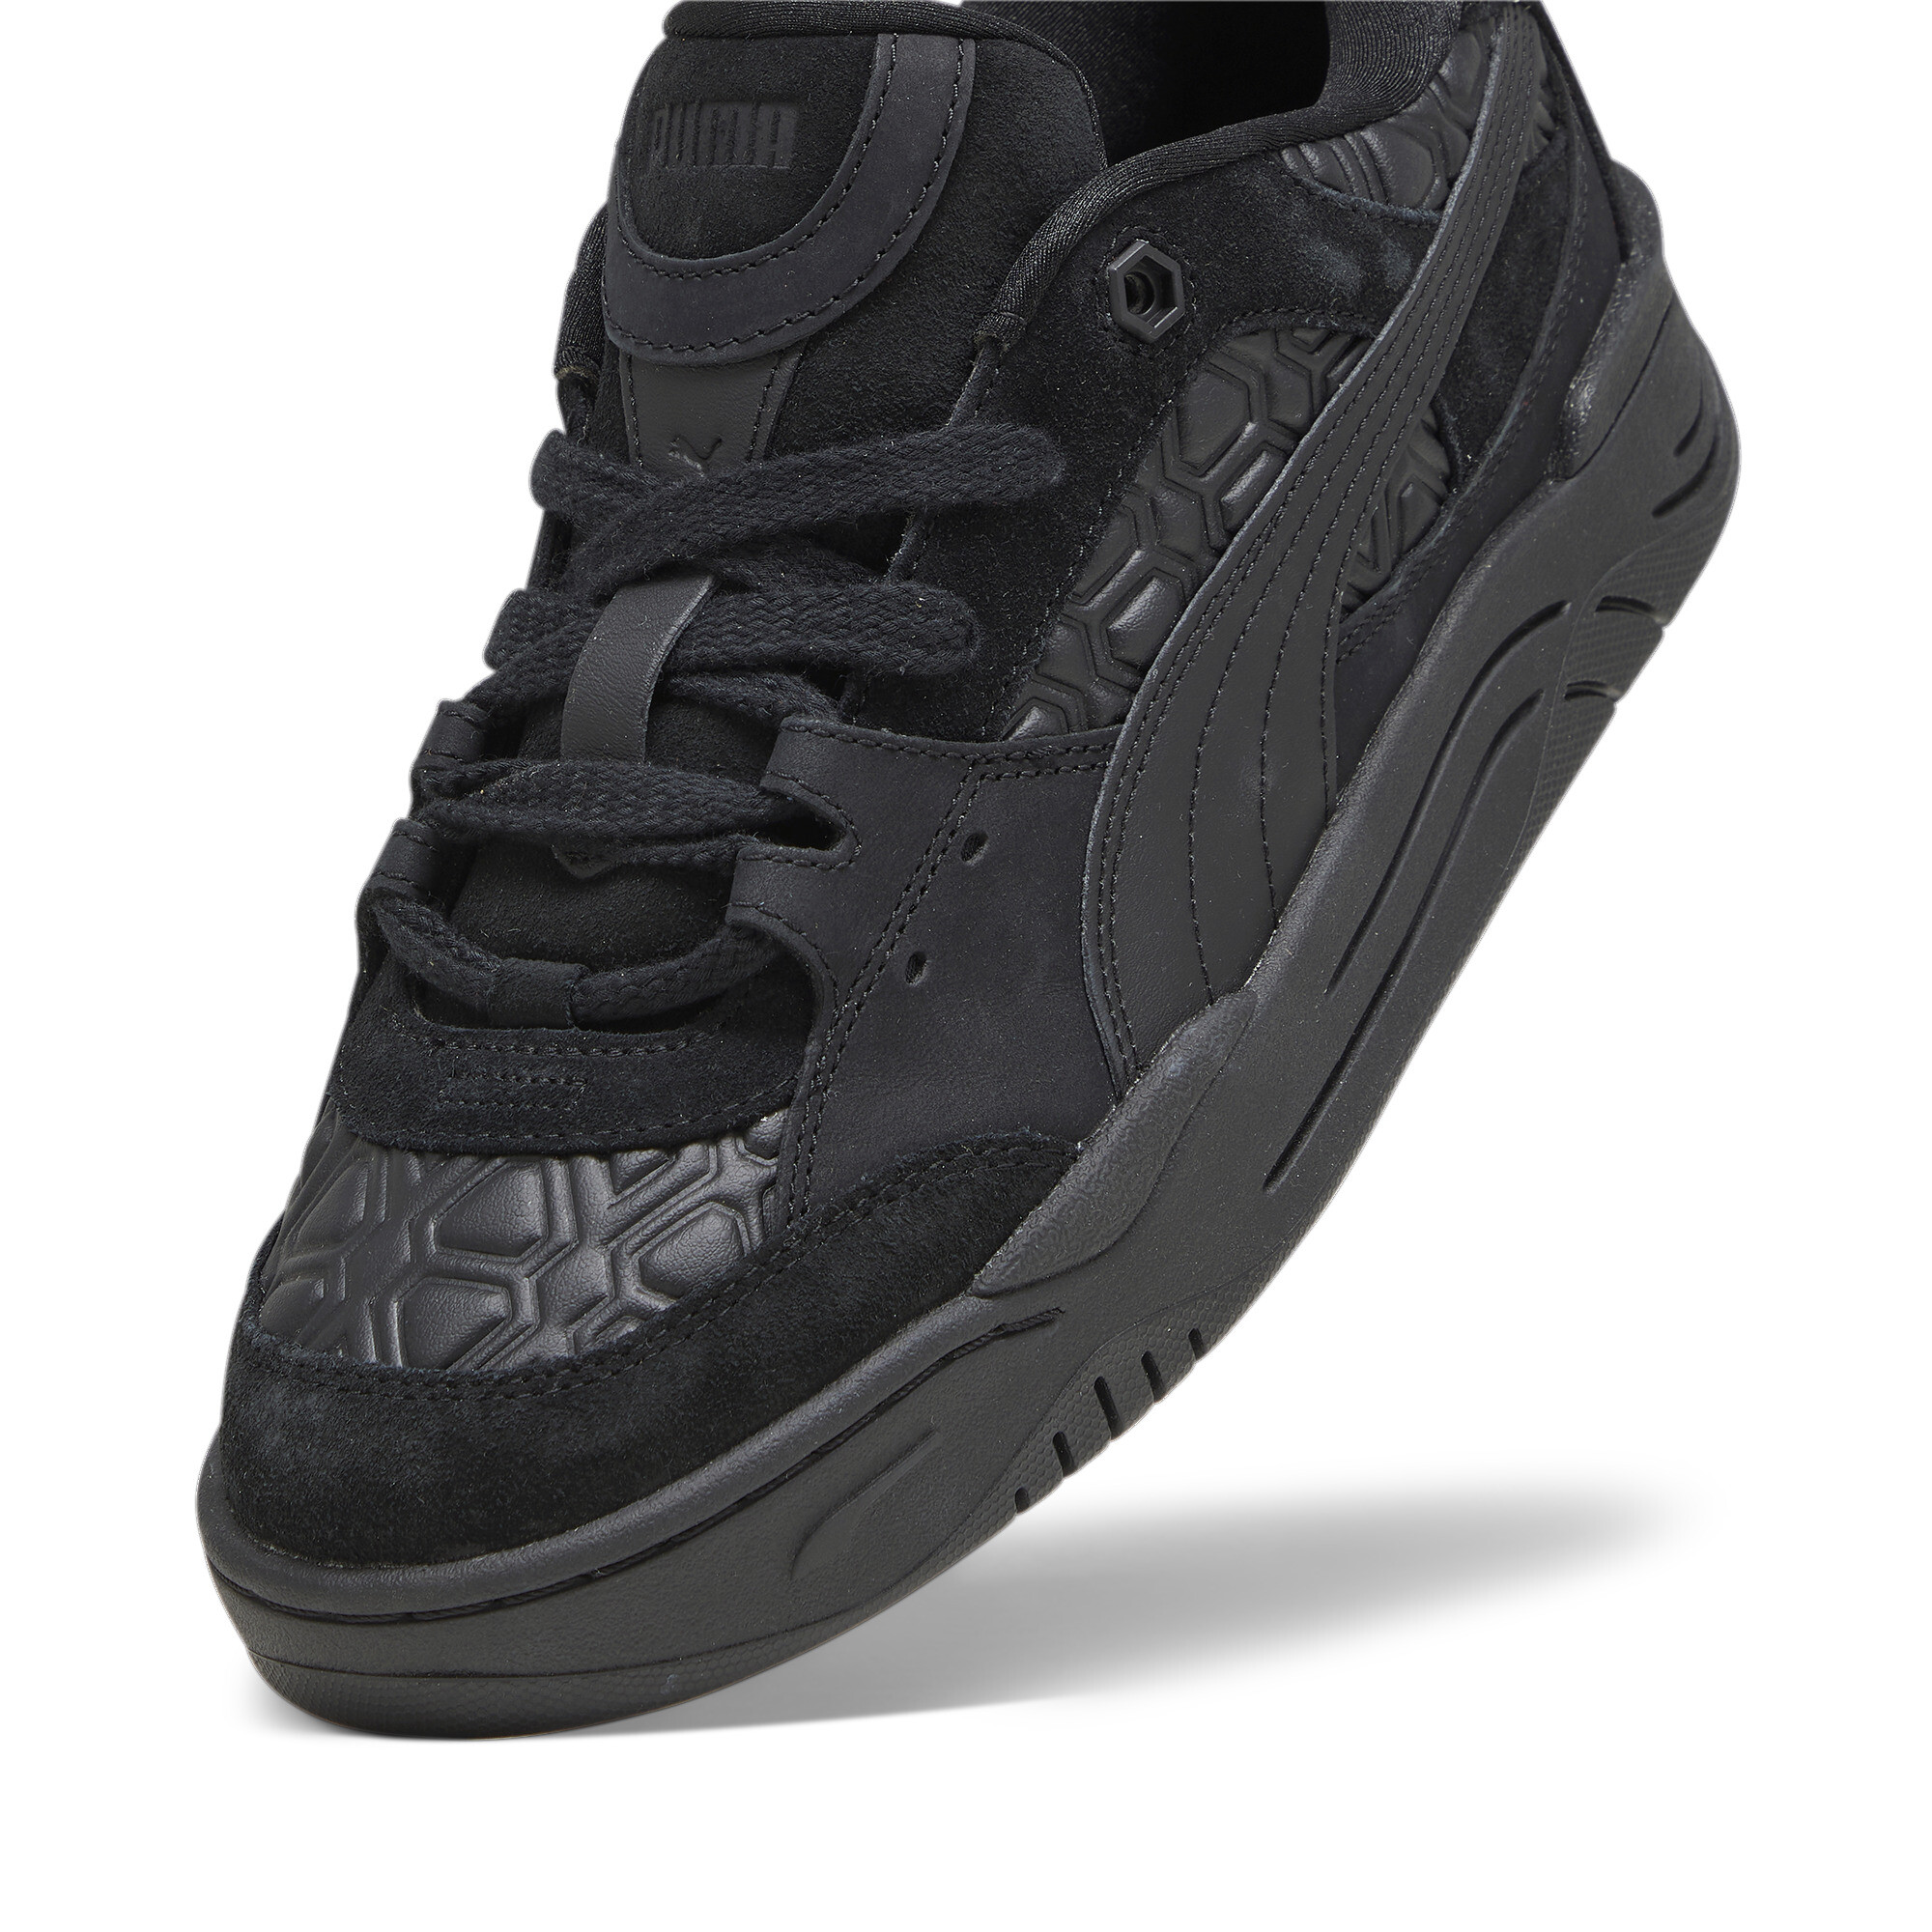 Men's LUXE SPORT PUMA-180 Sneakers In Black, Size EU 41